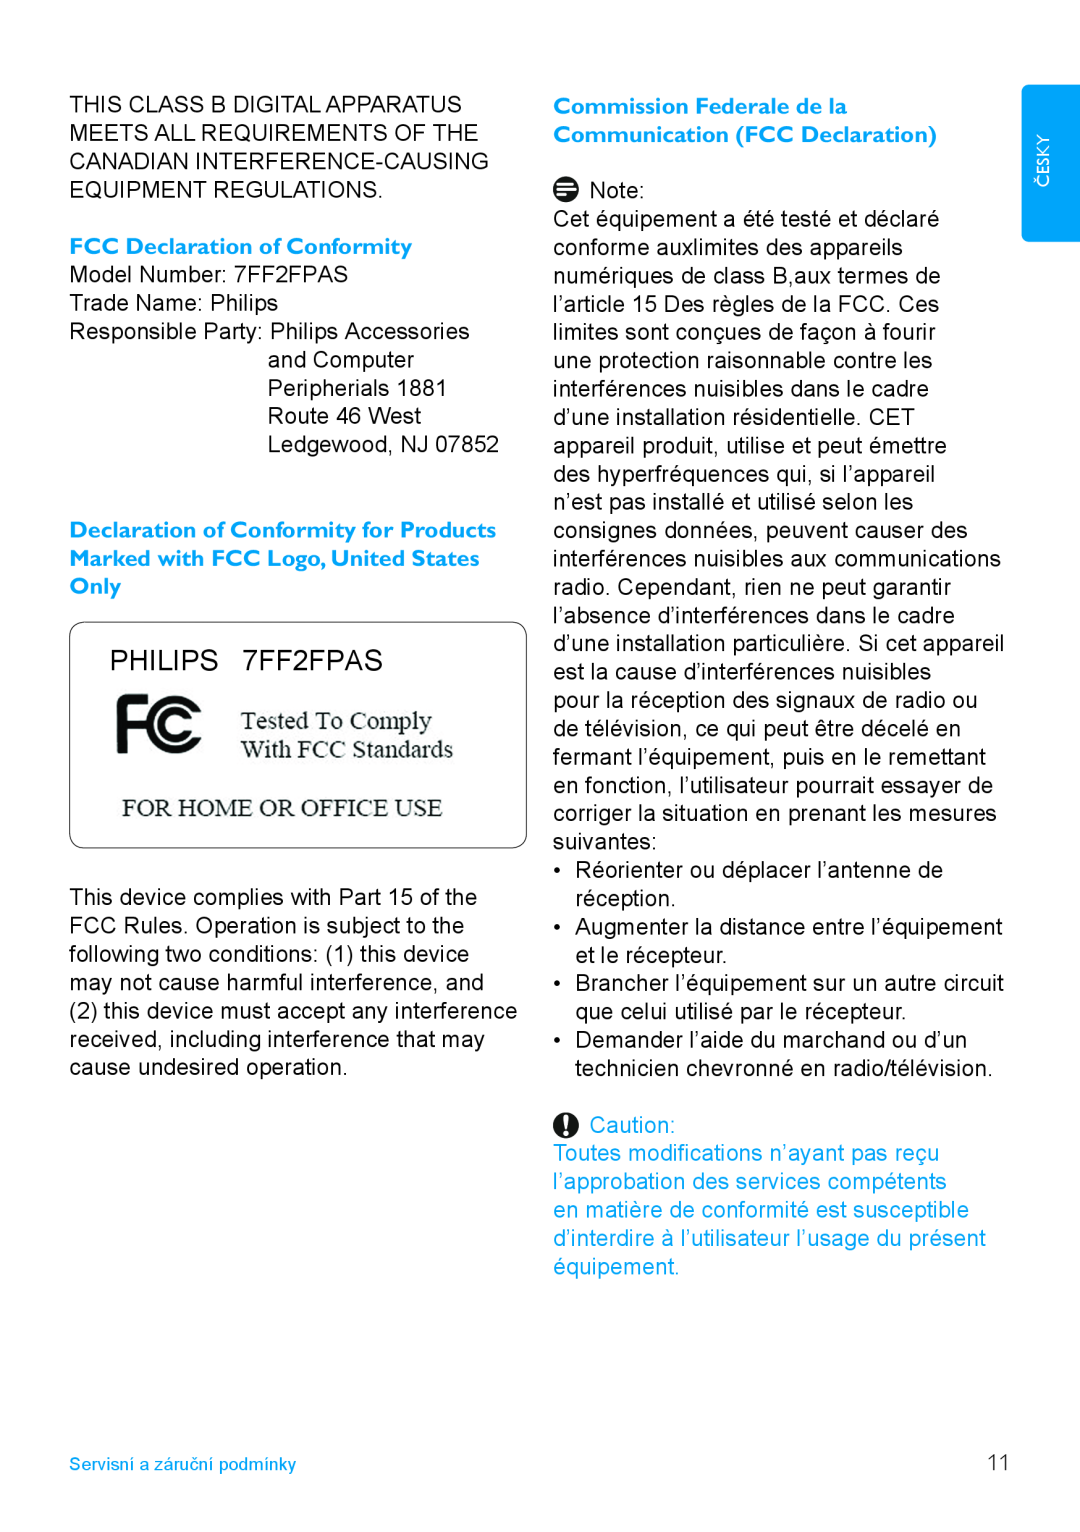 Philips manual FCC Declaration of Conformity, Commission Federale de la Communication FCC Declaration, PHILIPS 7FF2FPAS 